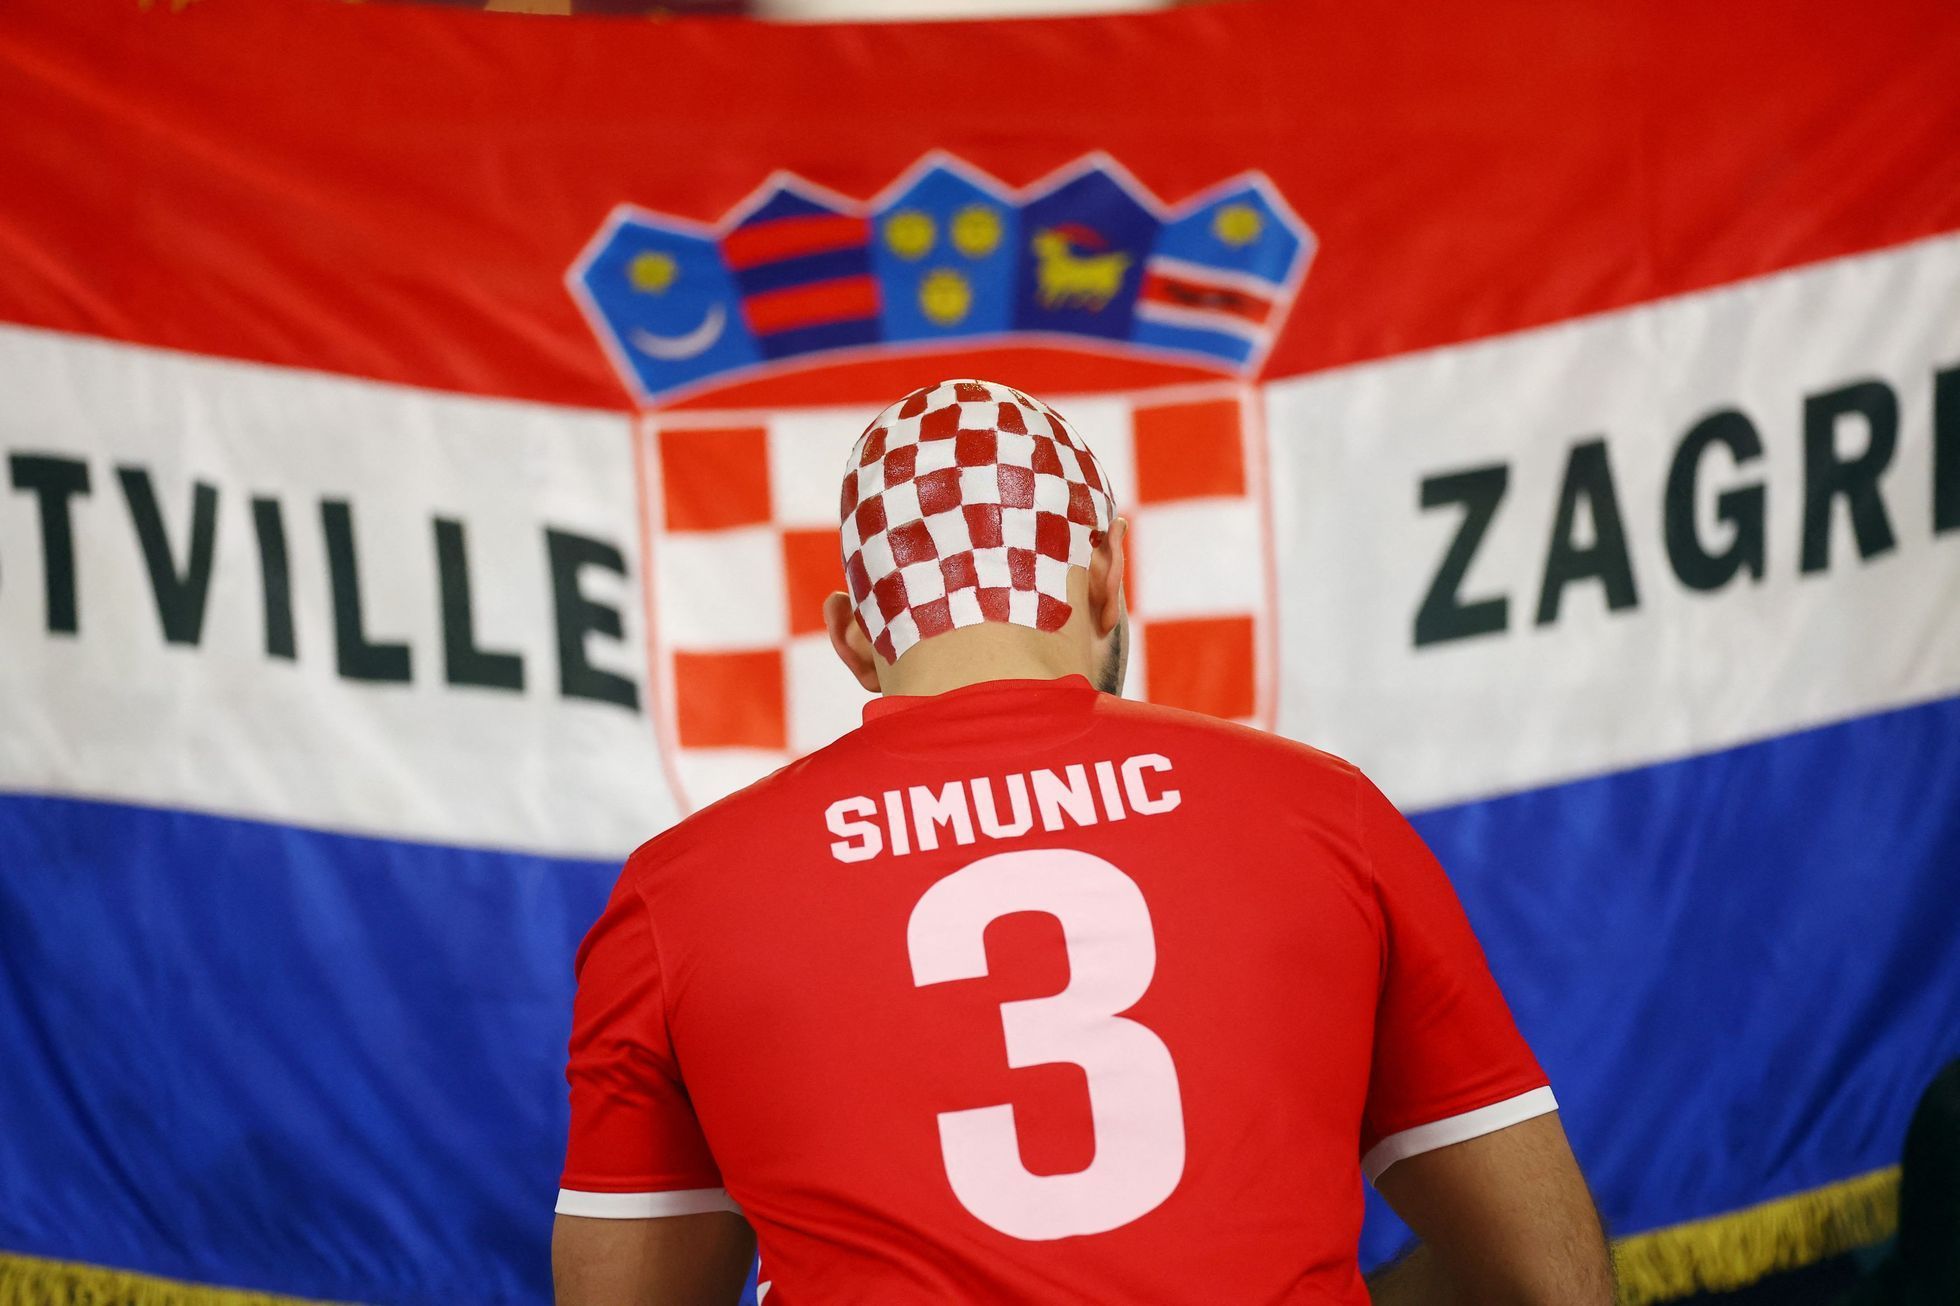 Chorvatský fanoušek před zápasem o 3. místo na MS 2022 Chorvatsko - Maroko